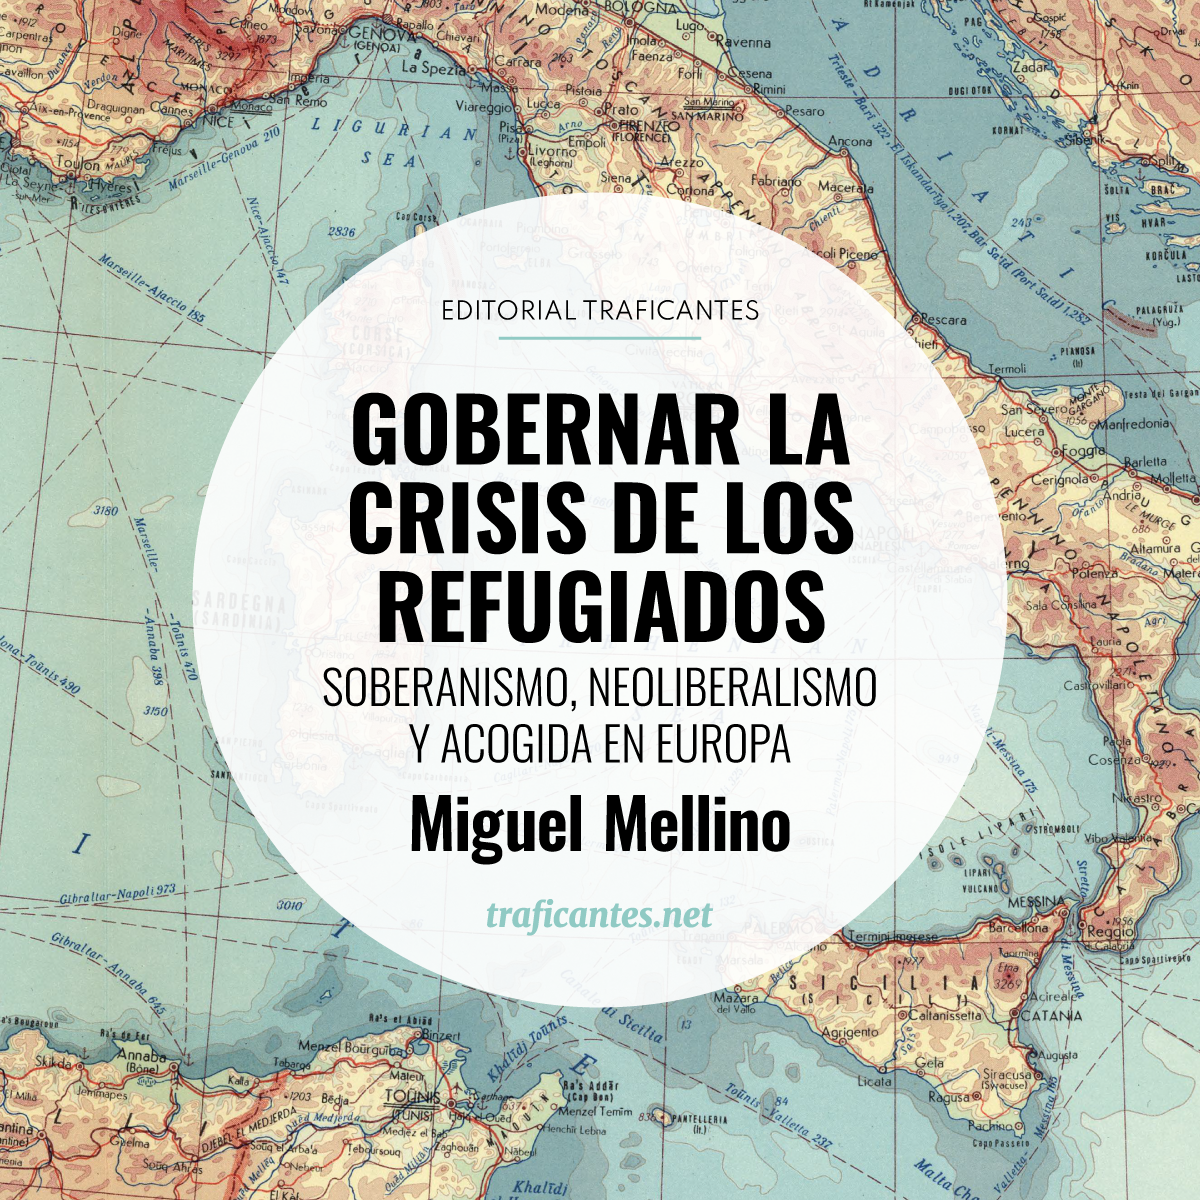 El antropólogo Miguel Mellino analiza la gestión de las migraciones desde un prisma decolonial que evidencia los hilos racistas que tejen la política europea de frontera.